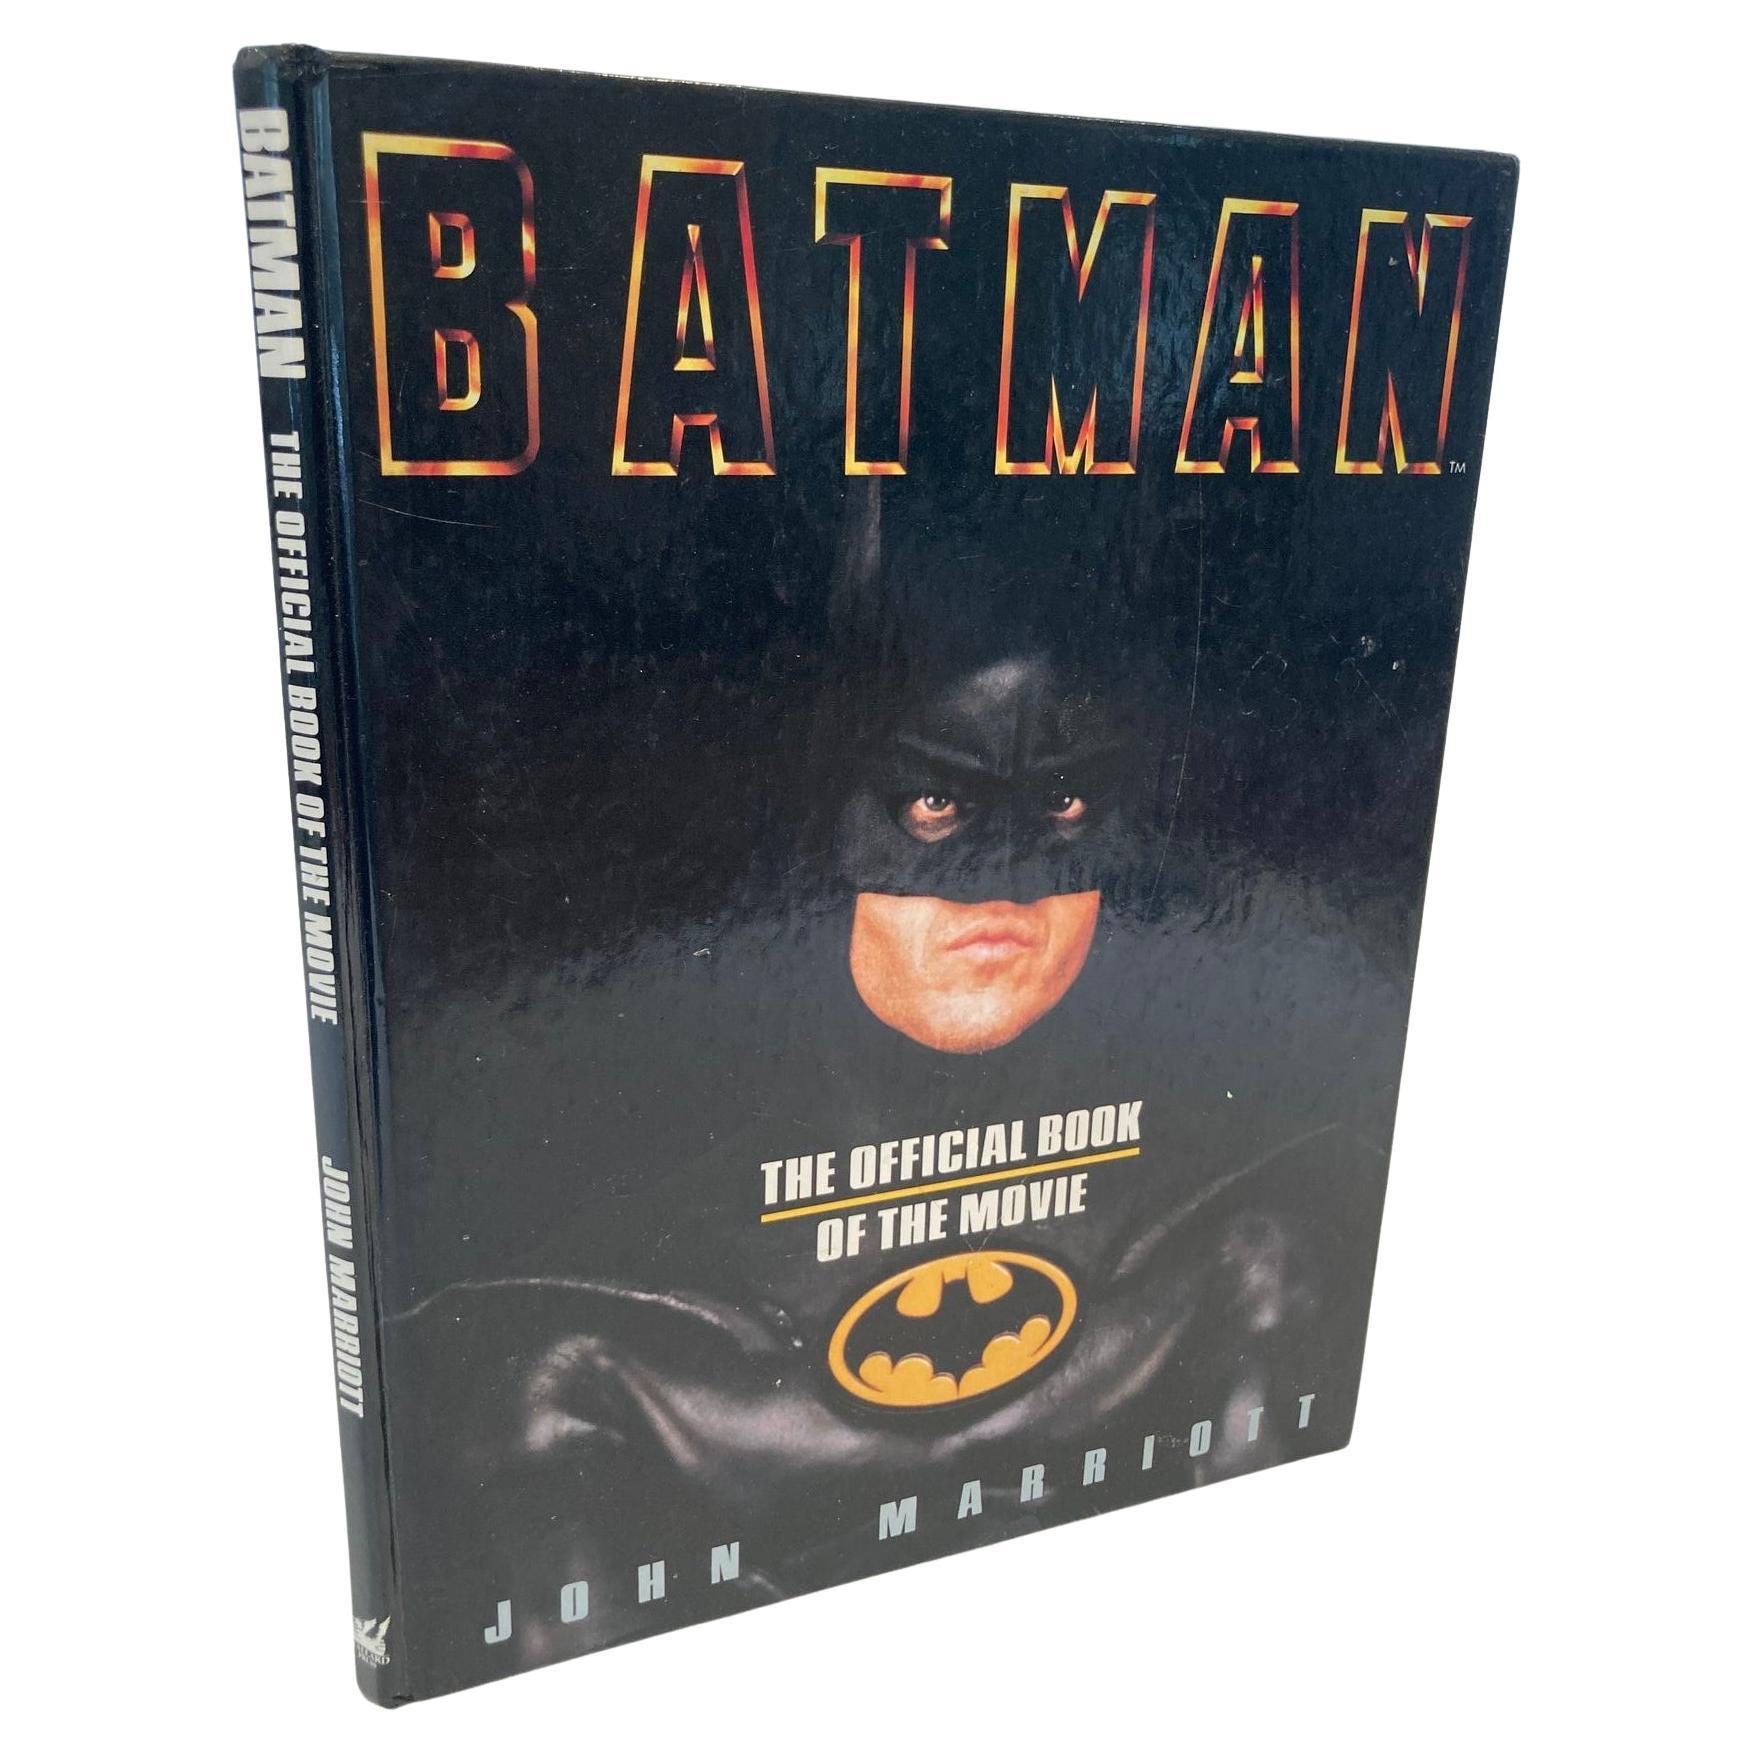 Batman: Das offizielle Buch des Films von John Marriott, Hardcover, 1989